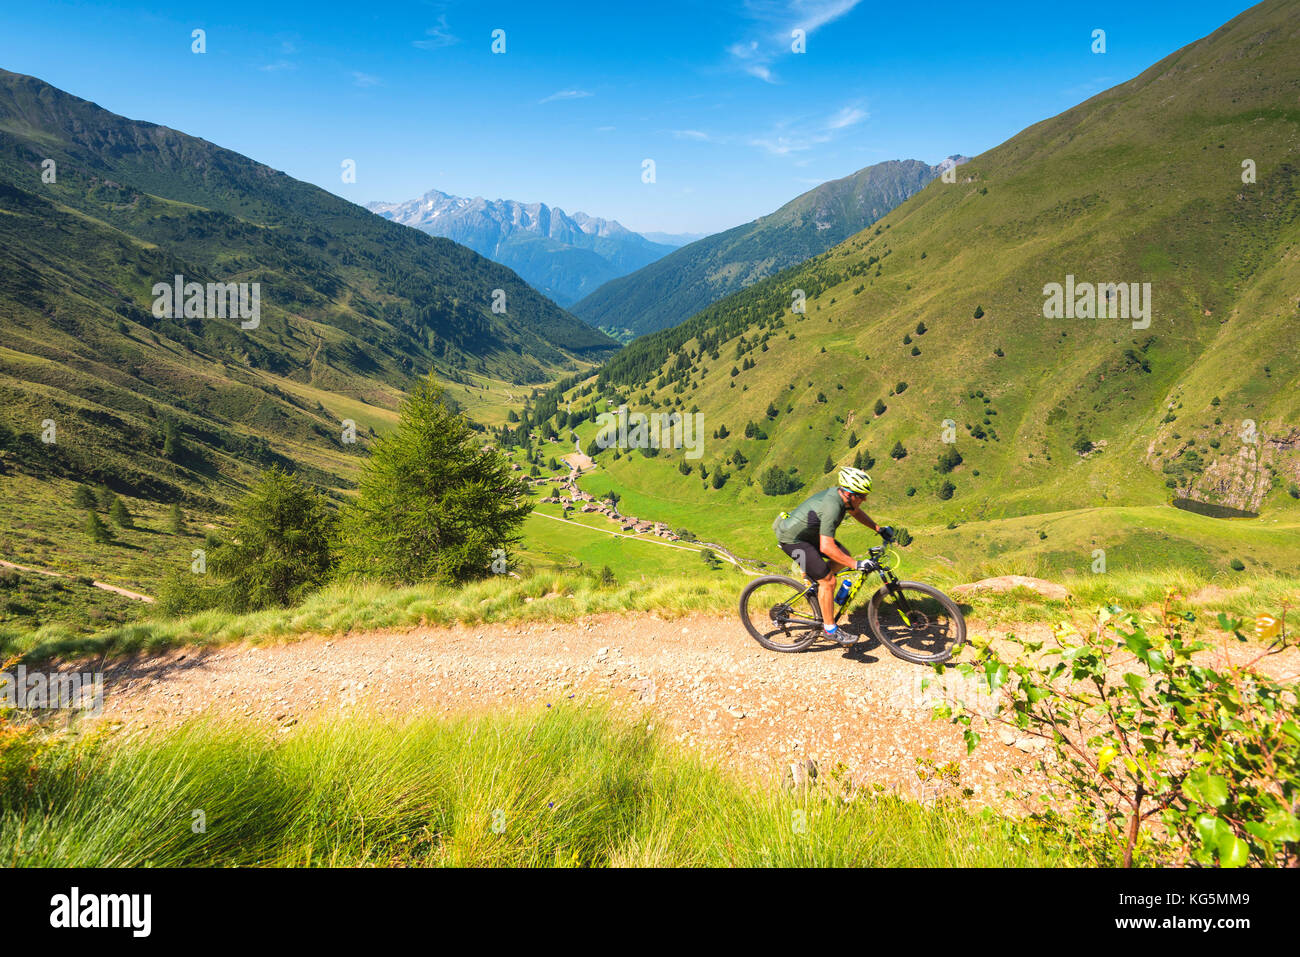 Biker dans la vallée Canè, province de Brescia, Lombardie, Italie, district de l'Europe. Banque D'Images